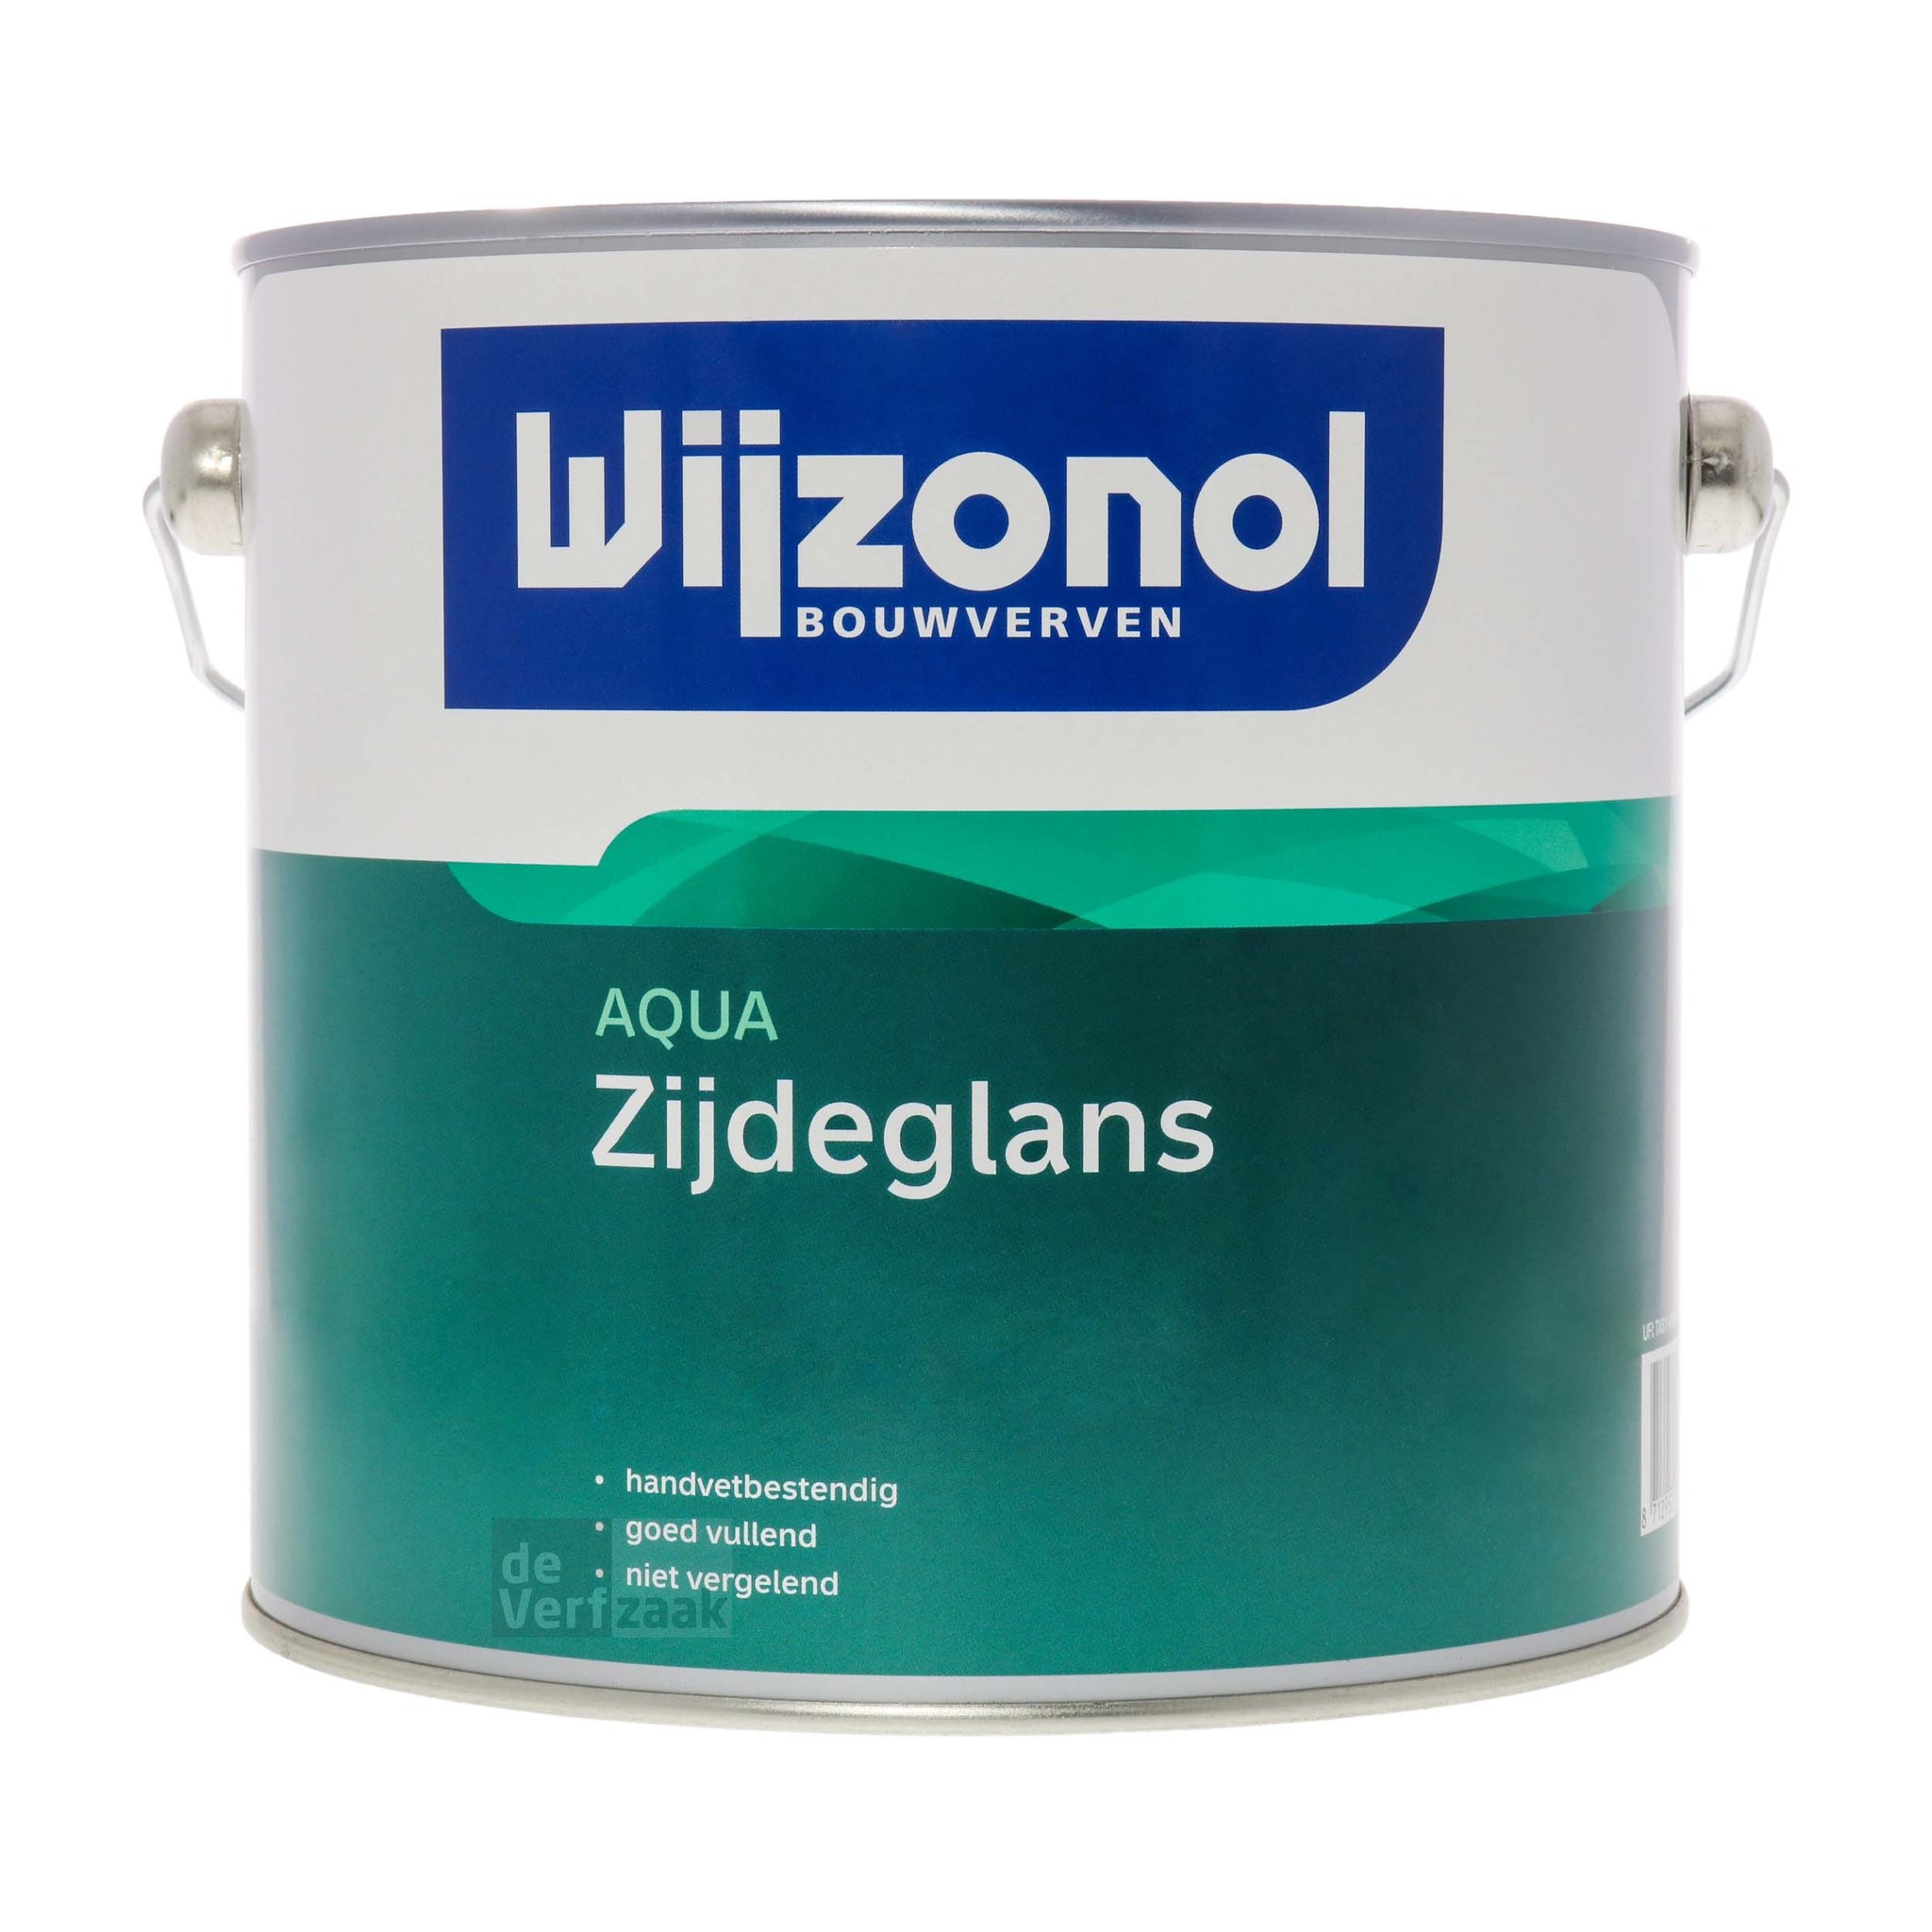 Wijzonol Aqua Zijdeglans | Korting tot 40% - De